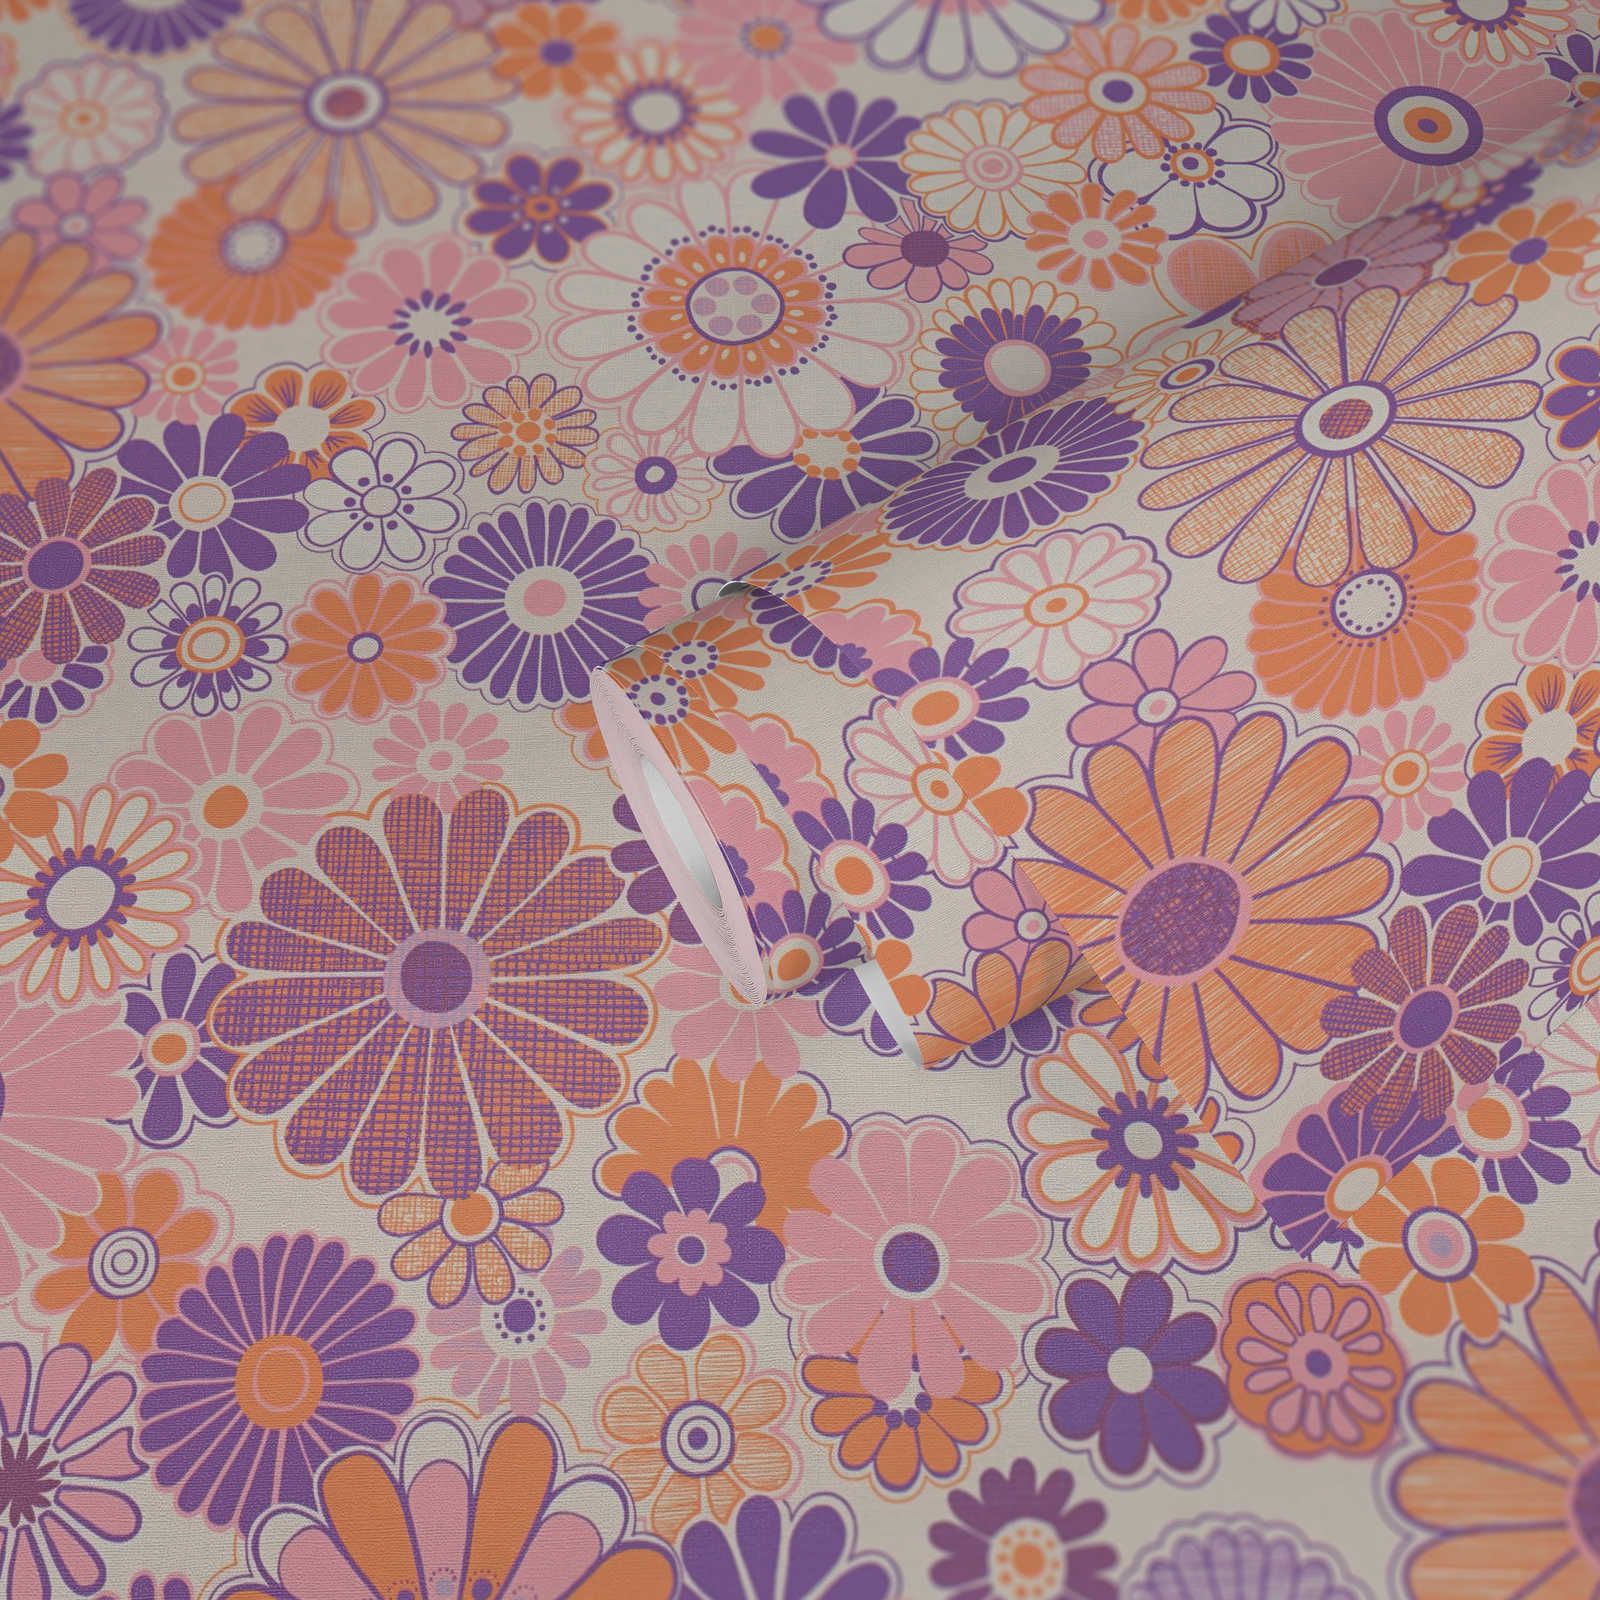             papier peint en papier intissé légèrement structuré avec motifs floraux - violet, orange, rose
        